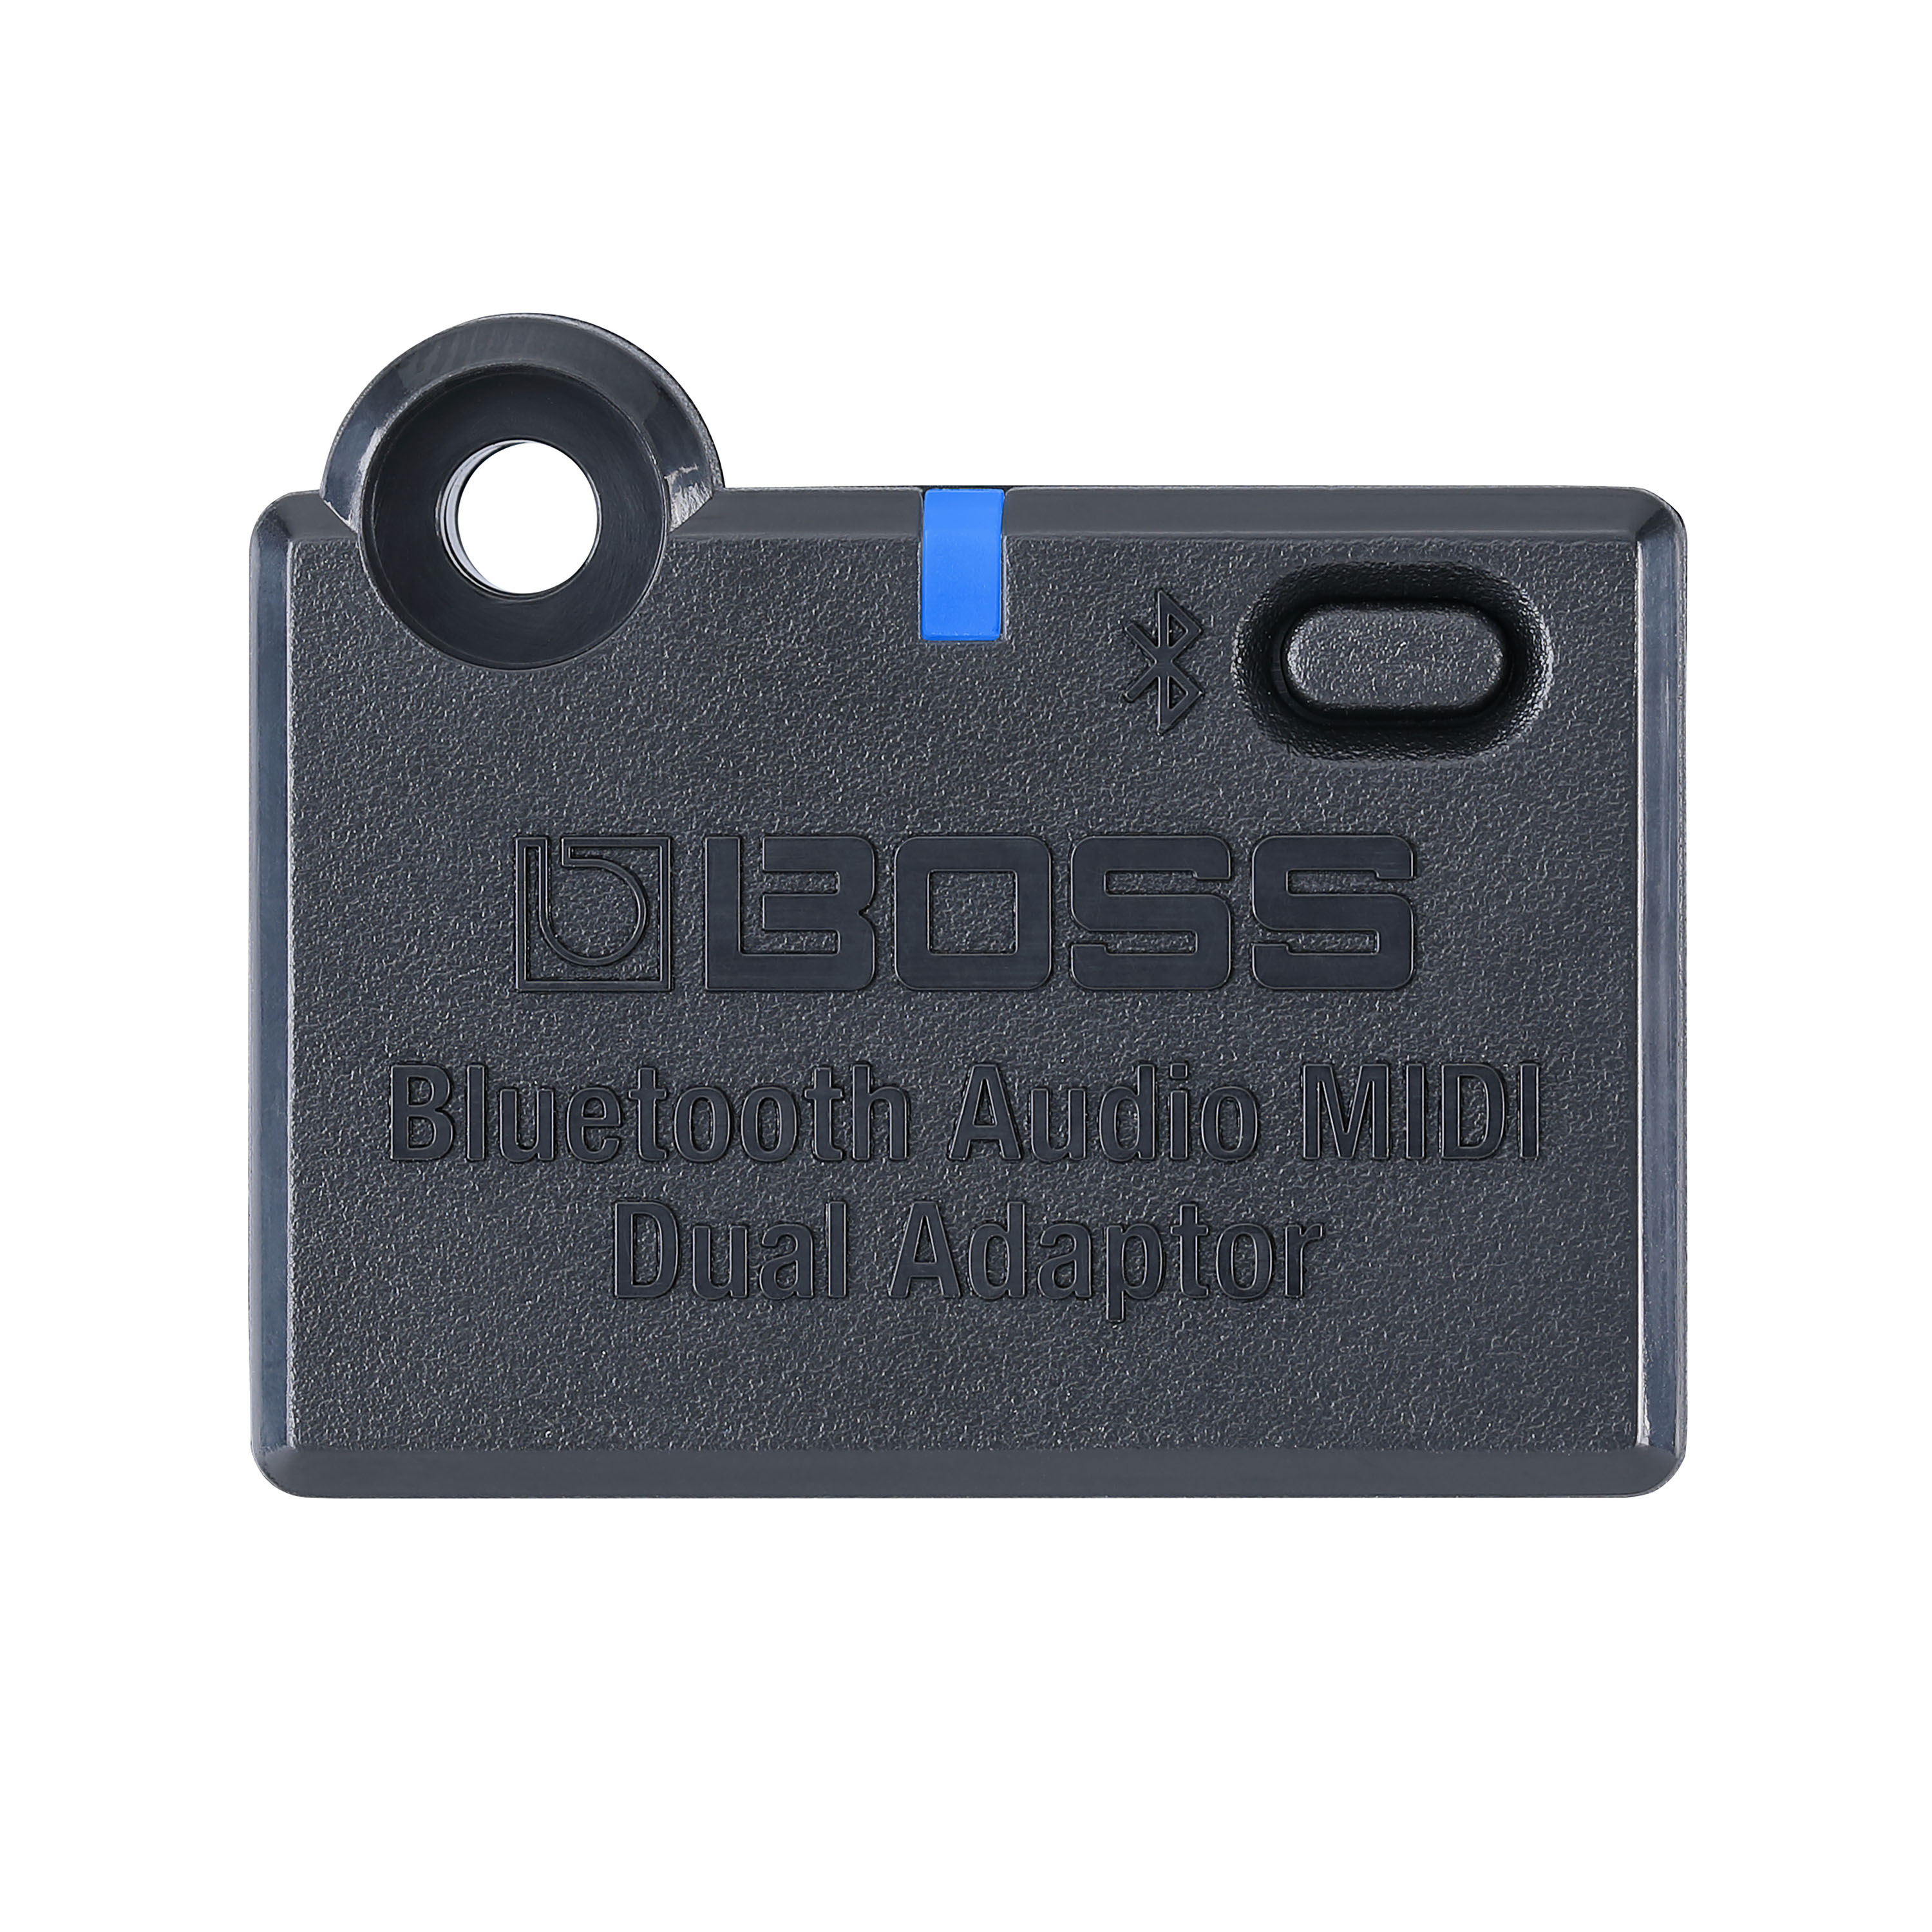 Boss Bluetooth Audio Adaptator - Mas accesorios para efectos - Variation 1